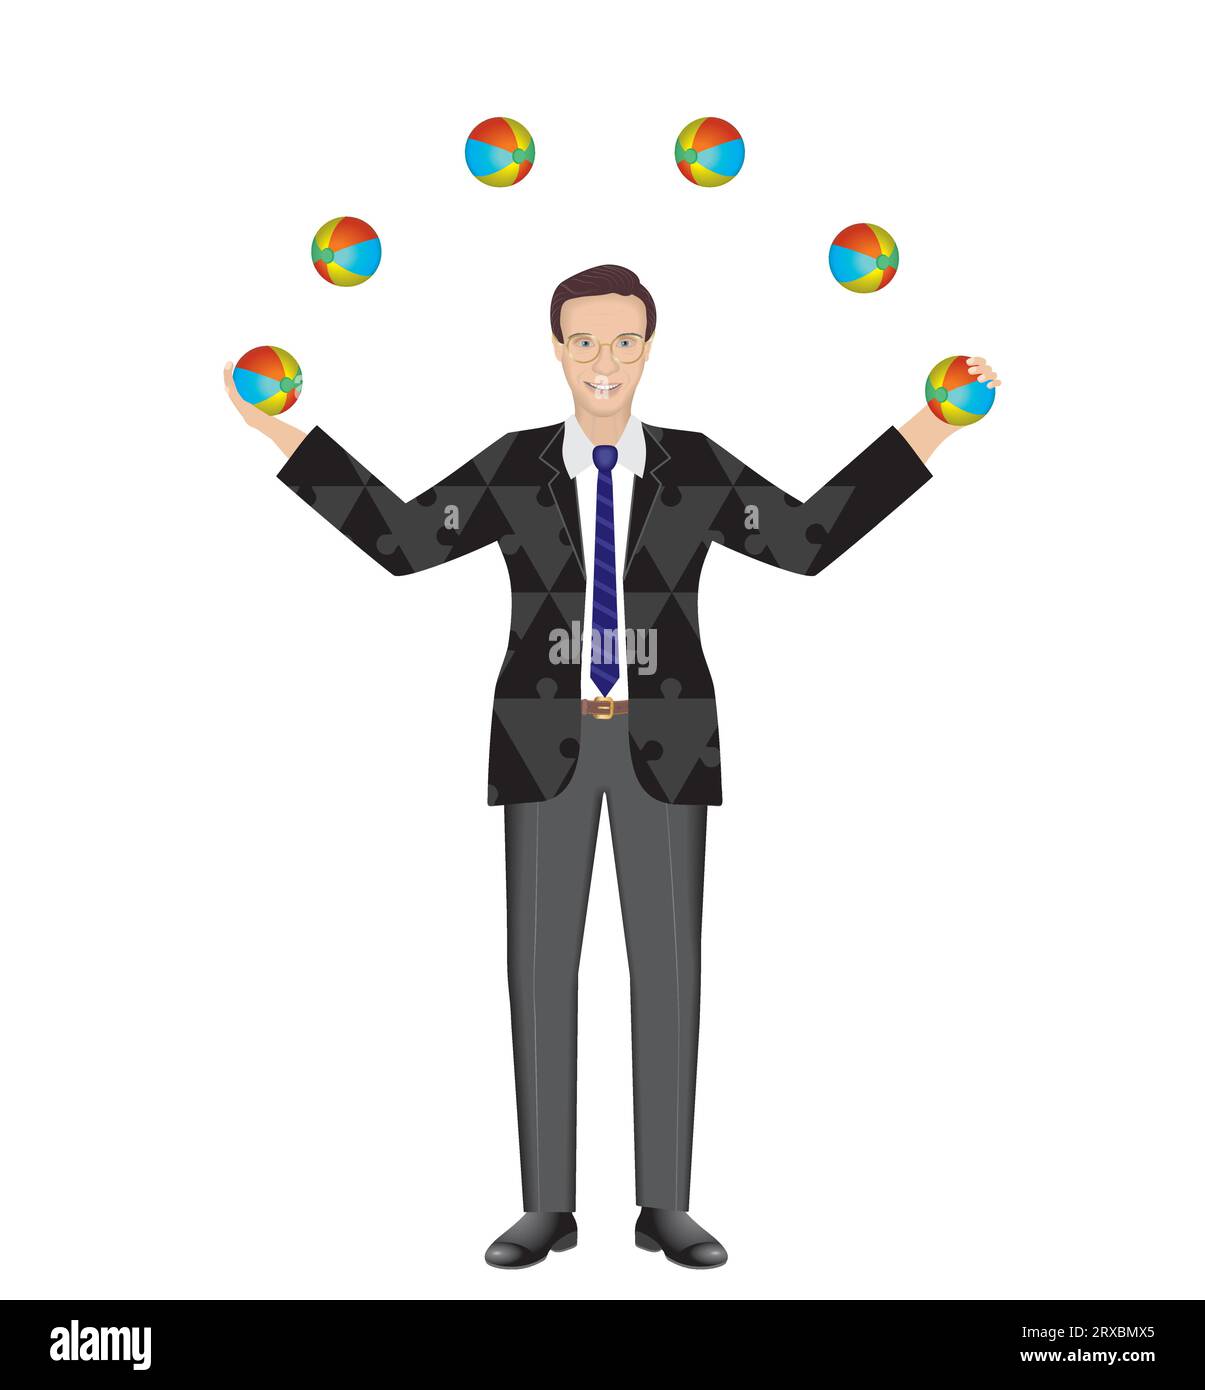 Mann jongliert mit Bälle. Multitasking, Koordinate. Kostüm mit Puzzleteilen. Isoliert. Vektorillustration. Stock Vektor